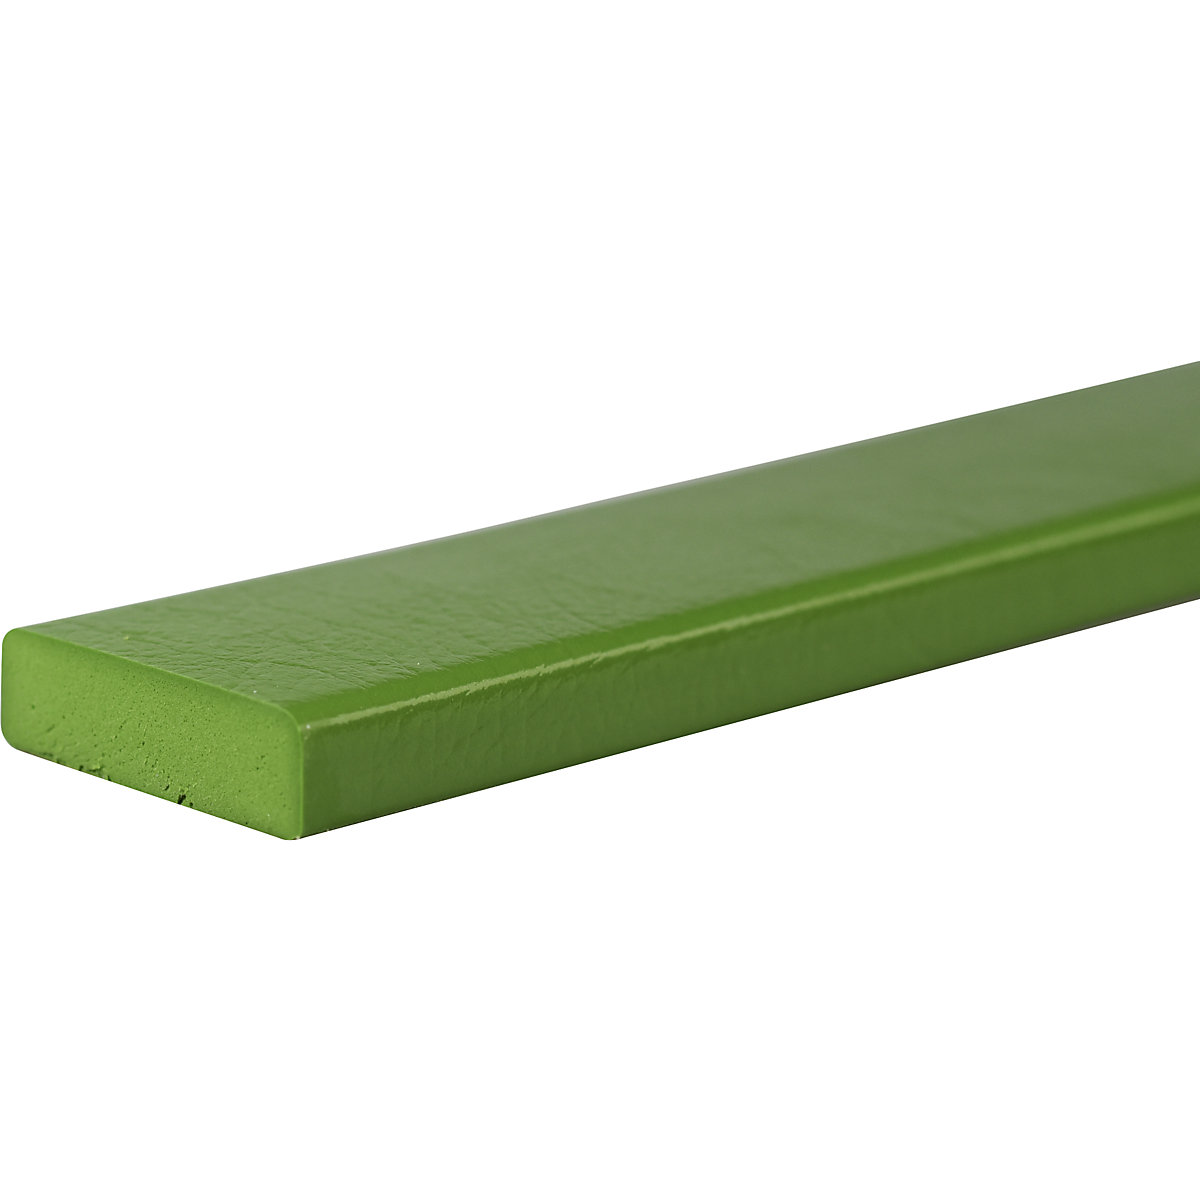 Zabezpieczenie powierzchni Knuffi® – SHG, typ S, szt. 1 m, zielony-22